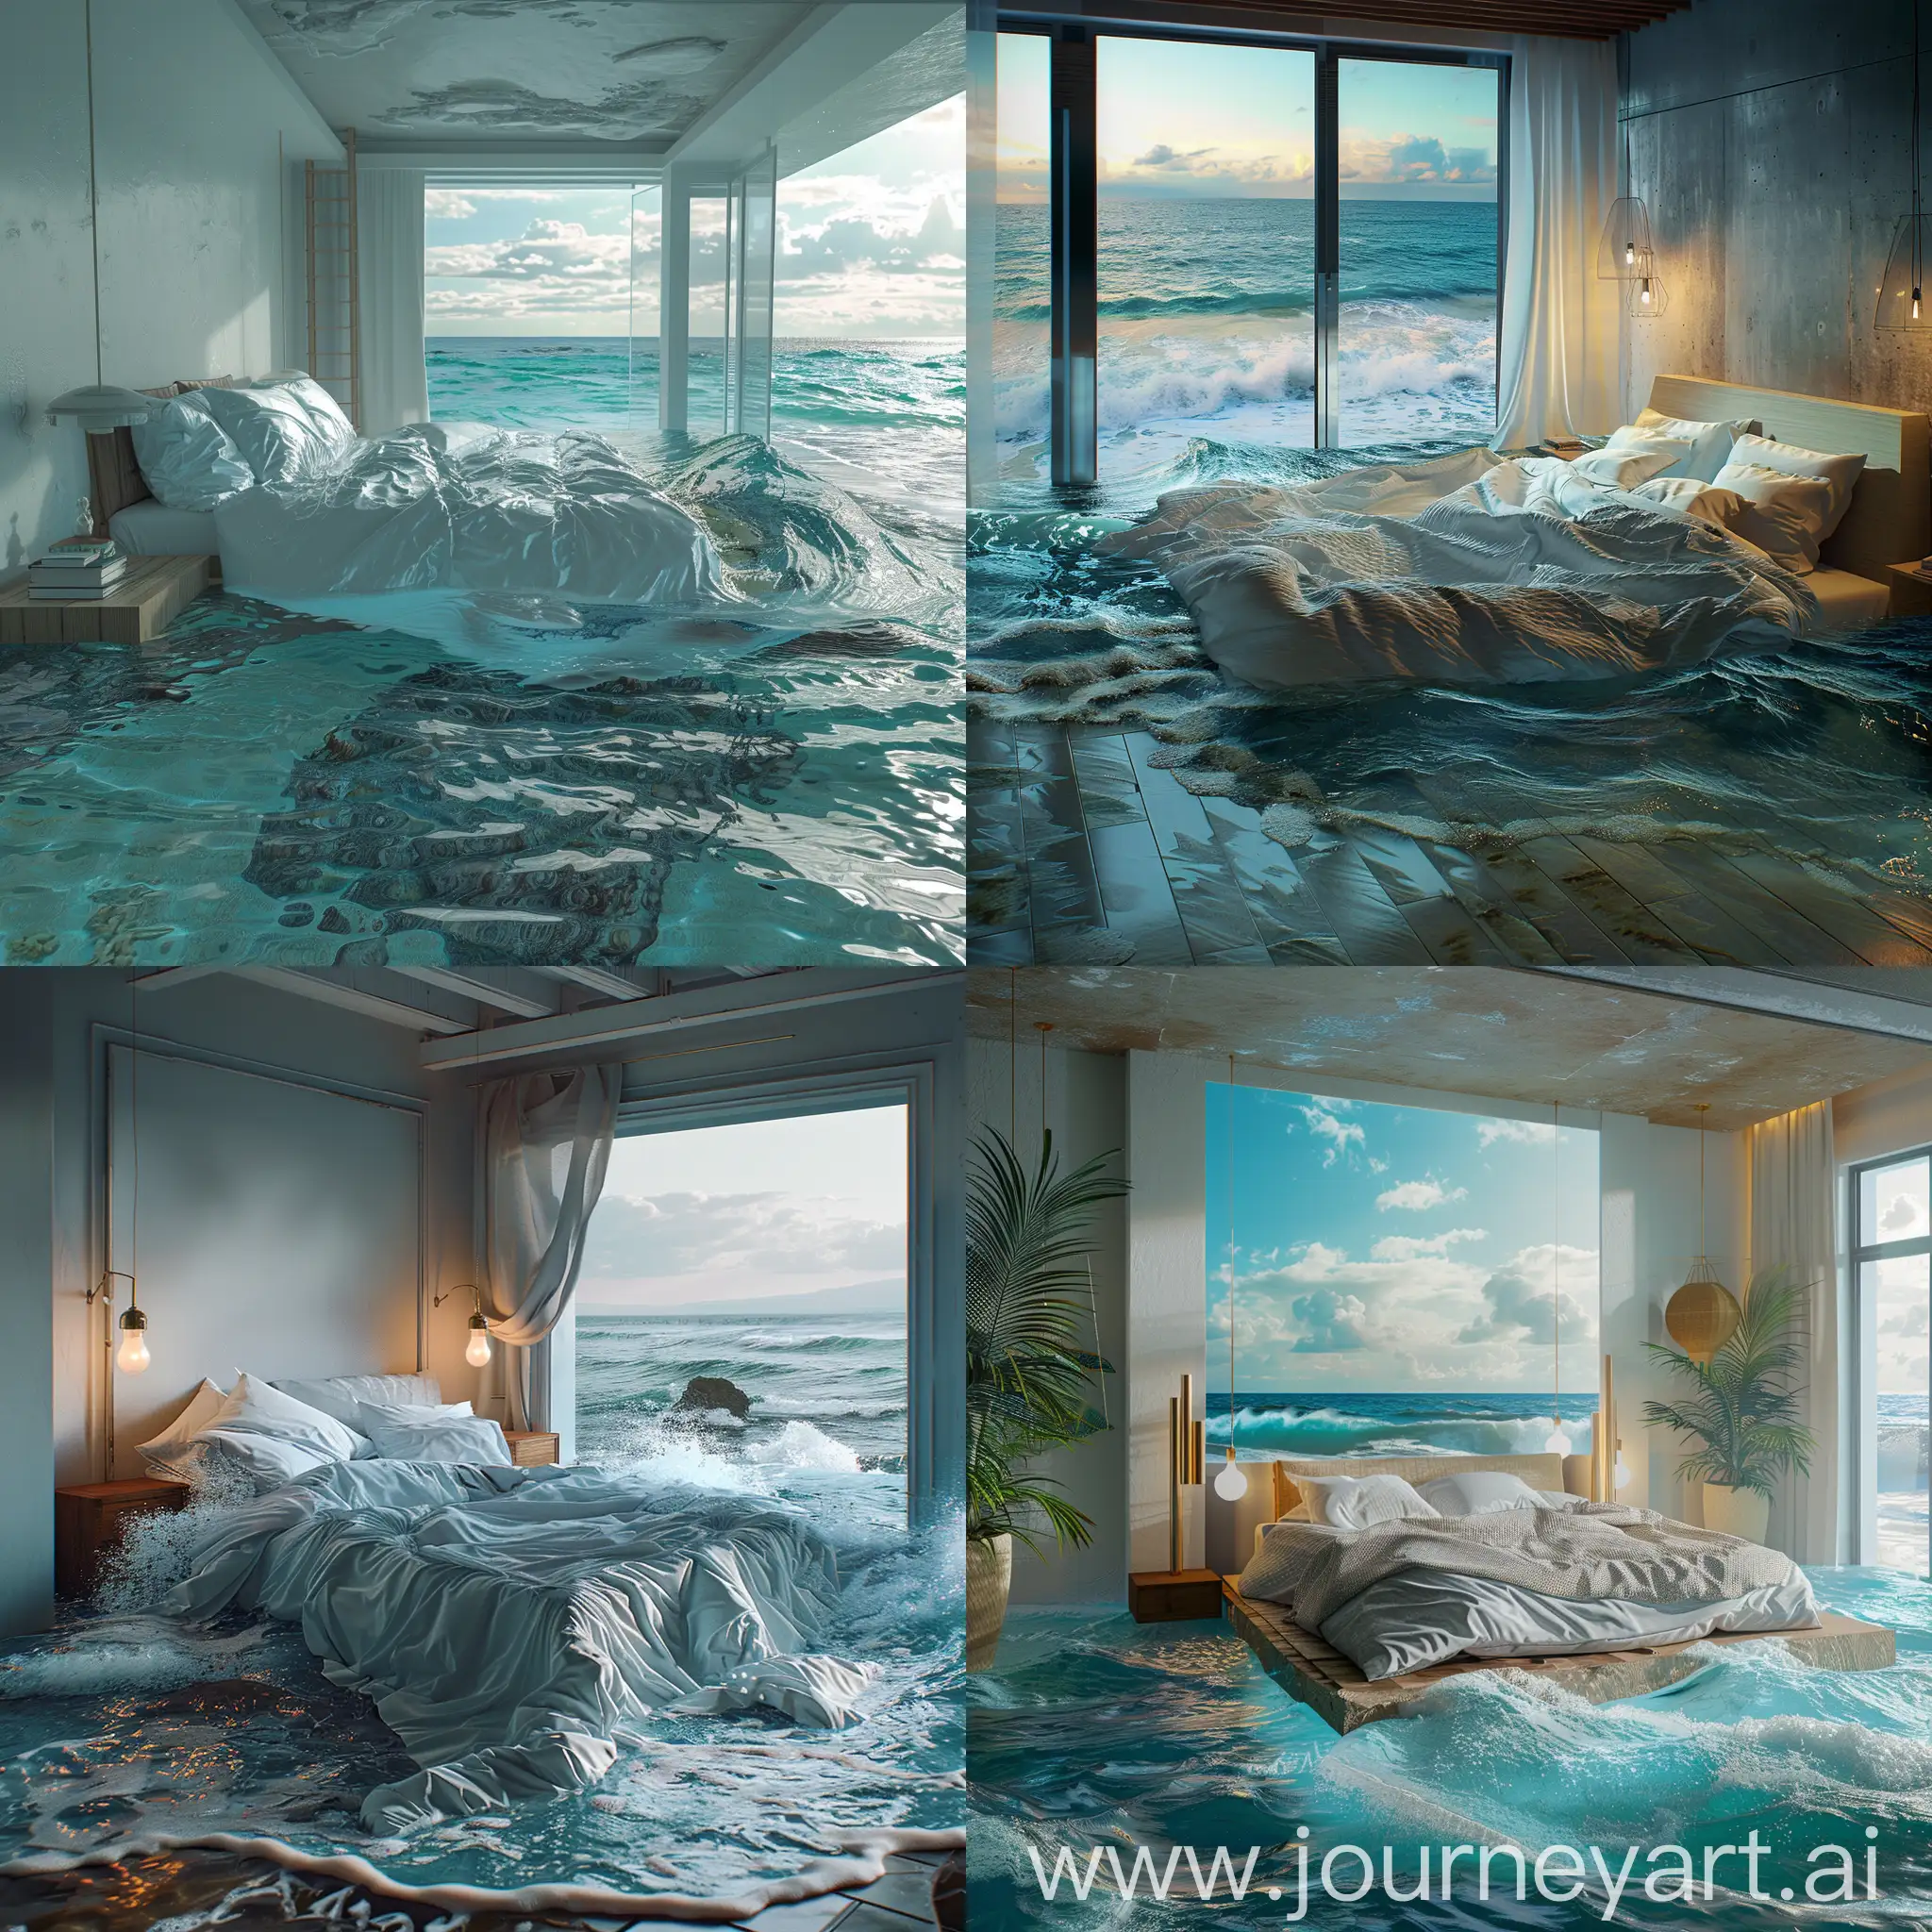 Bedroom-Melting-into-the-Ocean-4K-Surreal-Landscape